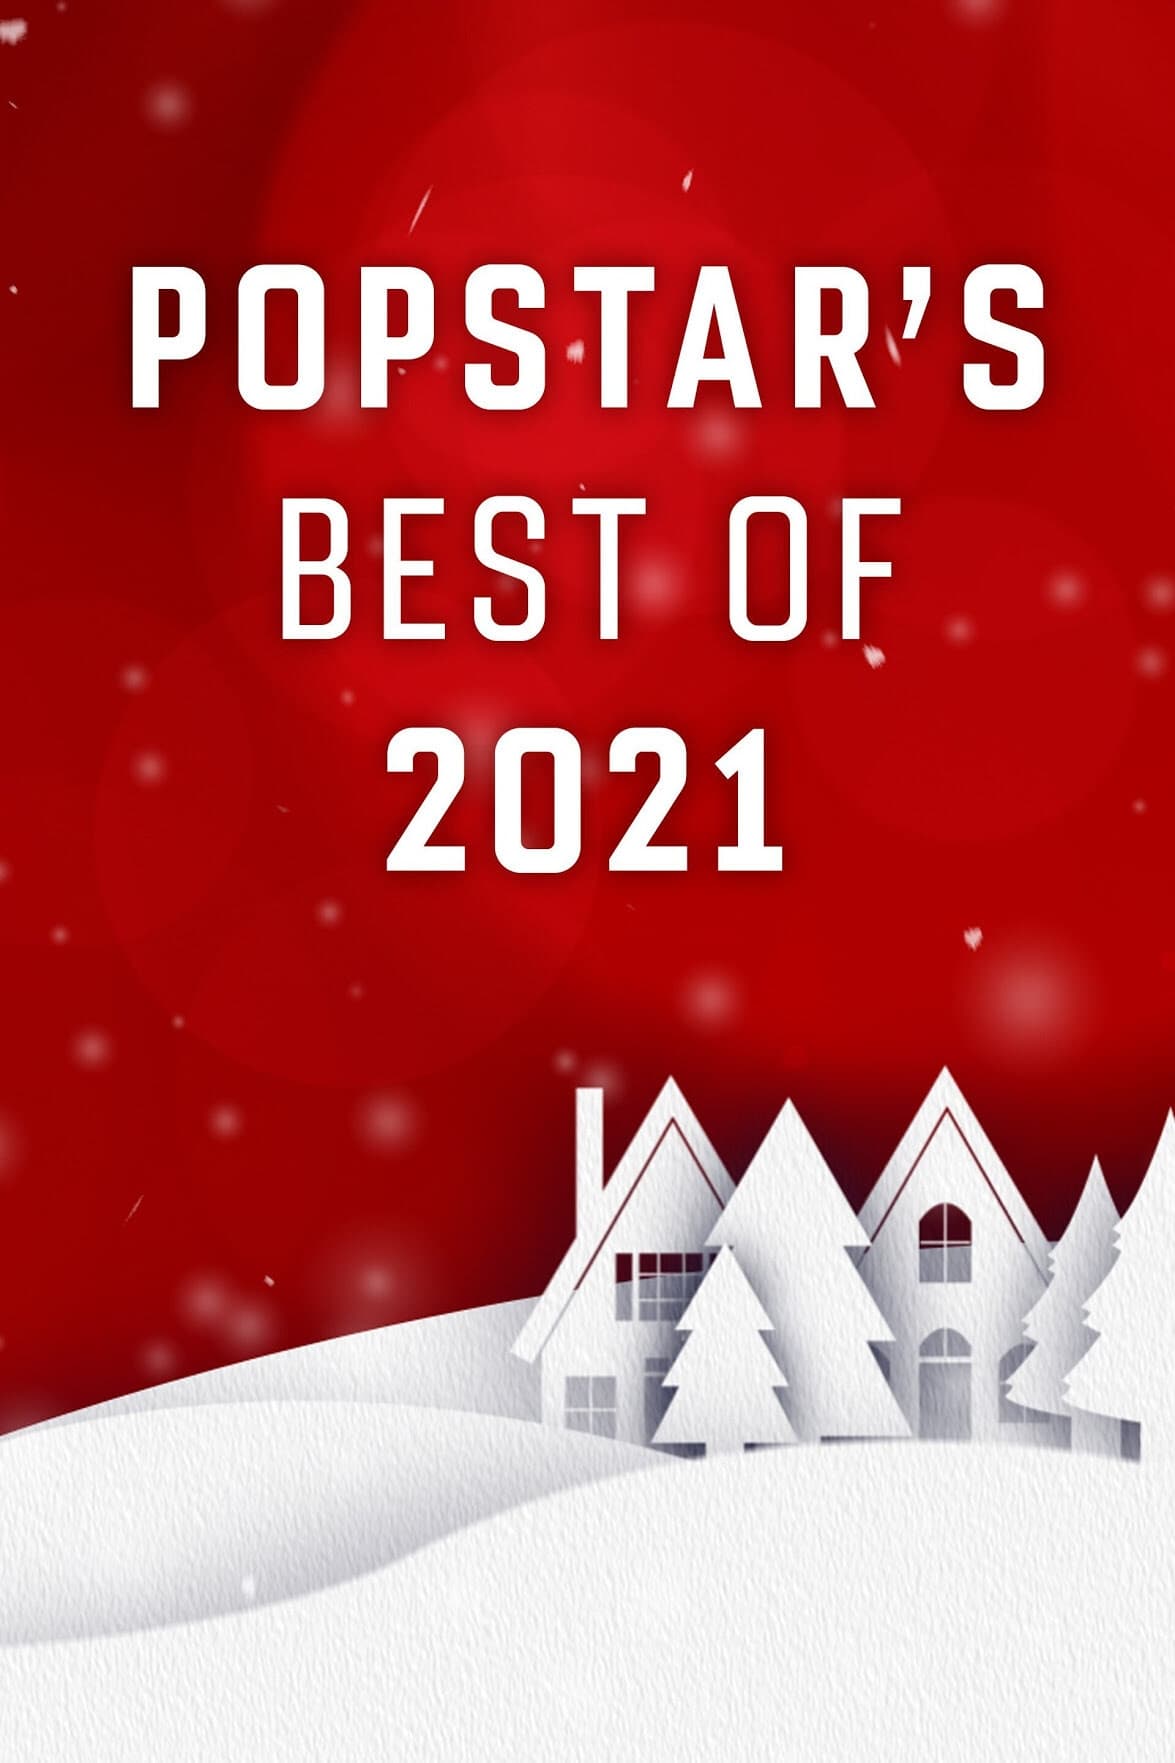 Popstar's Best of 2021